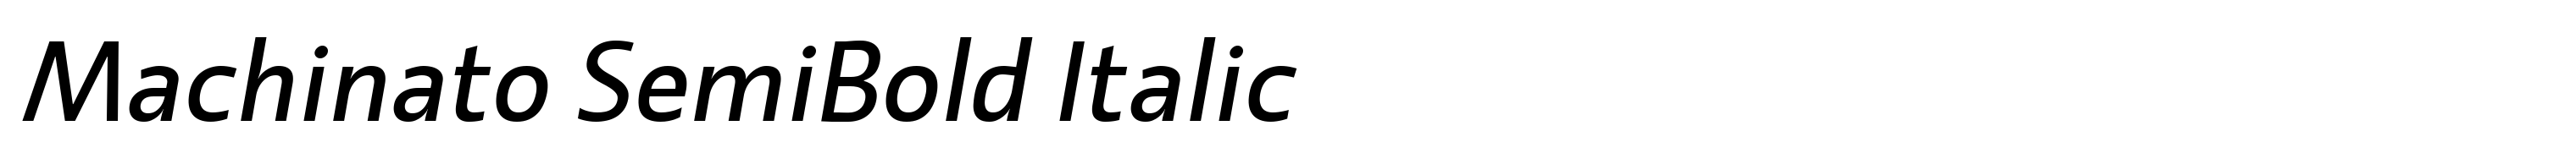 Machinato SemiBold Italic